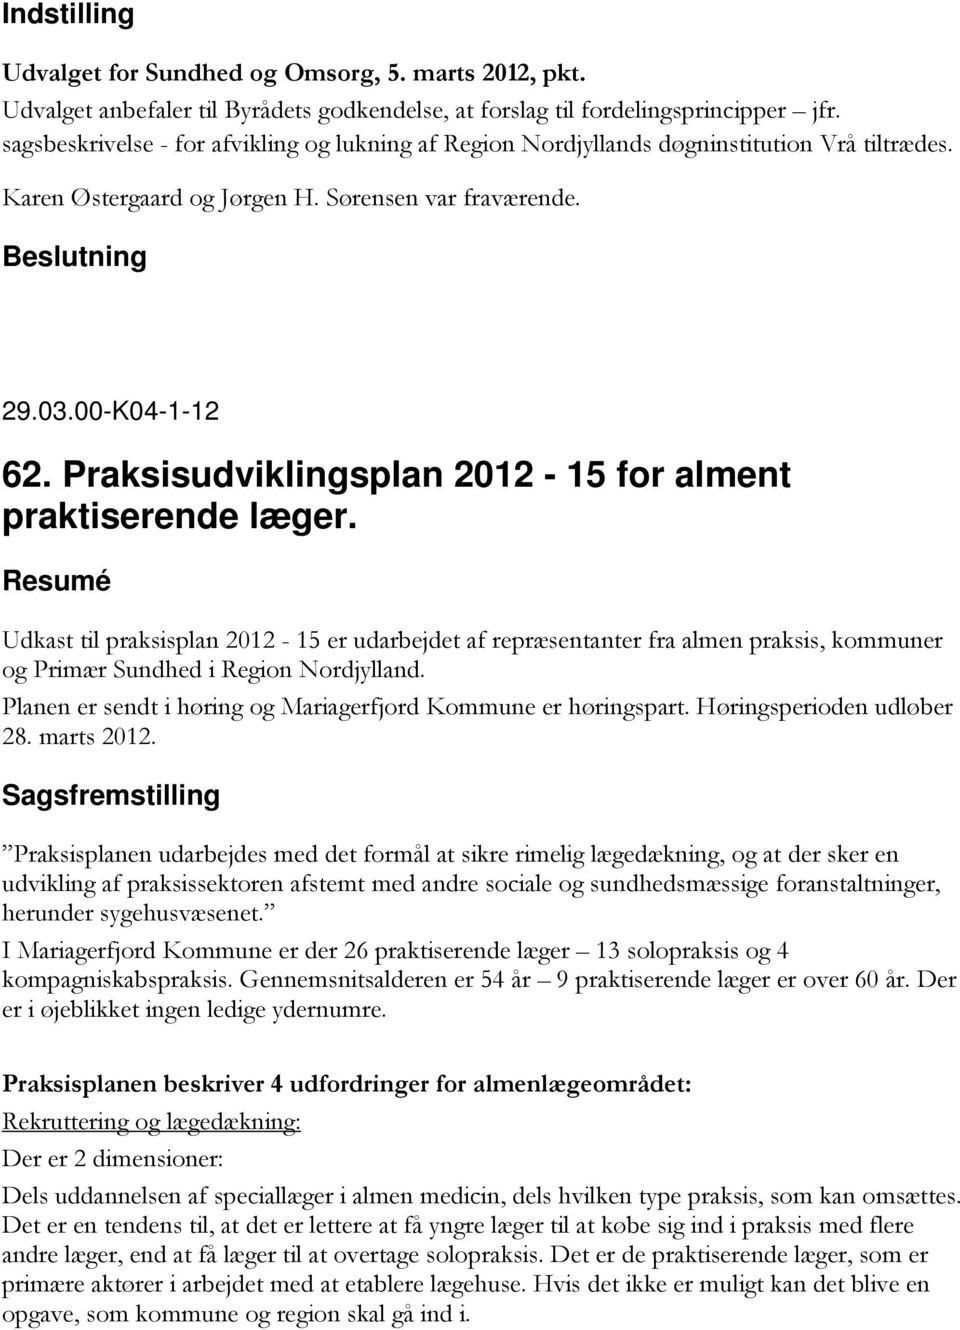 Praksisudviklingsplan 2012-15 for alment praktiserende læger. Resumé Udkast til praksisplan 2012-15 er udarbejdet af repræsentanter fra almen praksis, kommuner og Primær Sundhed i Region Nordjylland.